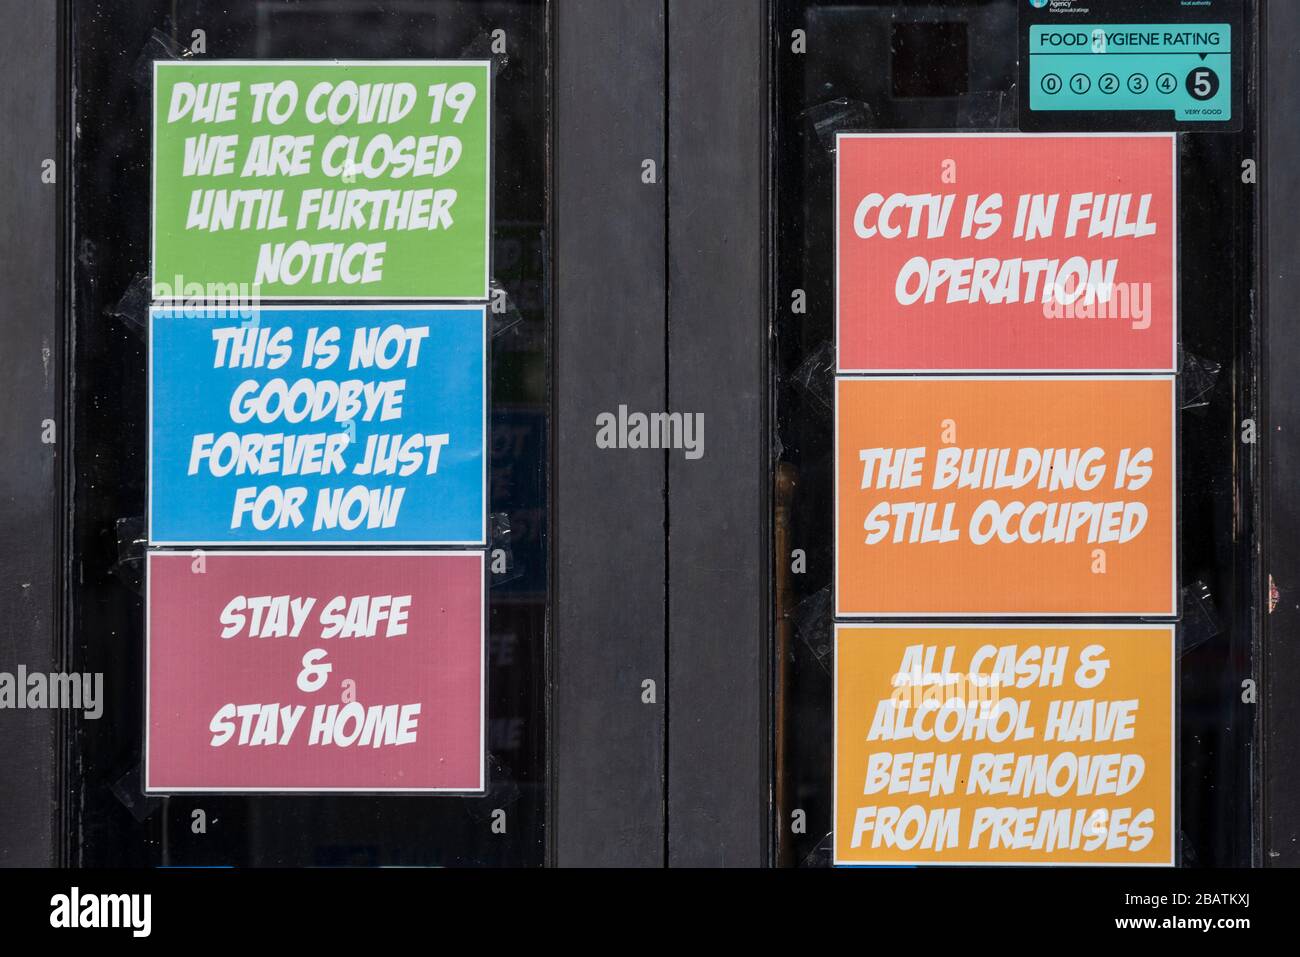 El Cliff Pub, casa pública, cerró durante el cierre del brote pandémico COVID-19 Coronavirus. Mensajes a los clientes. Esto no es adiós. Manténgase seguro Foto de stock